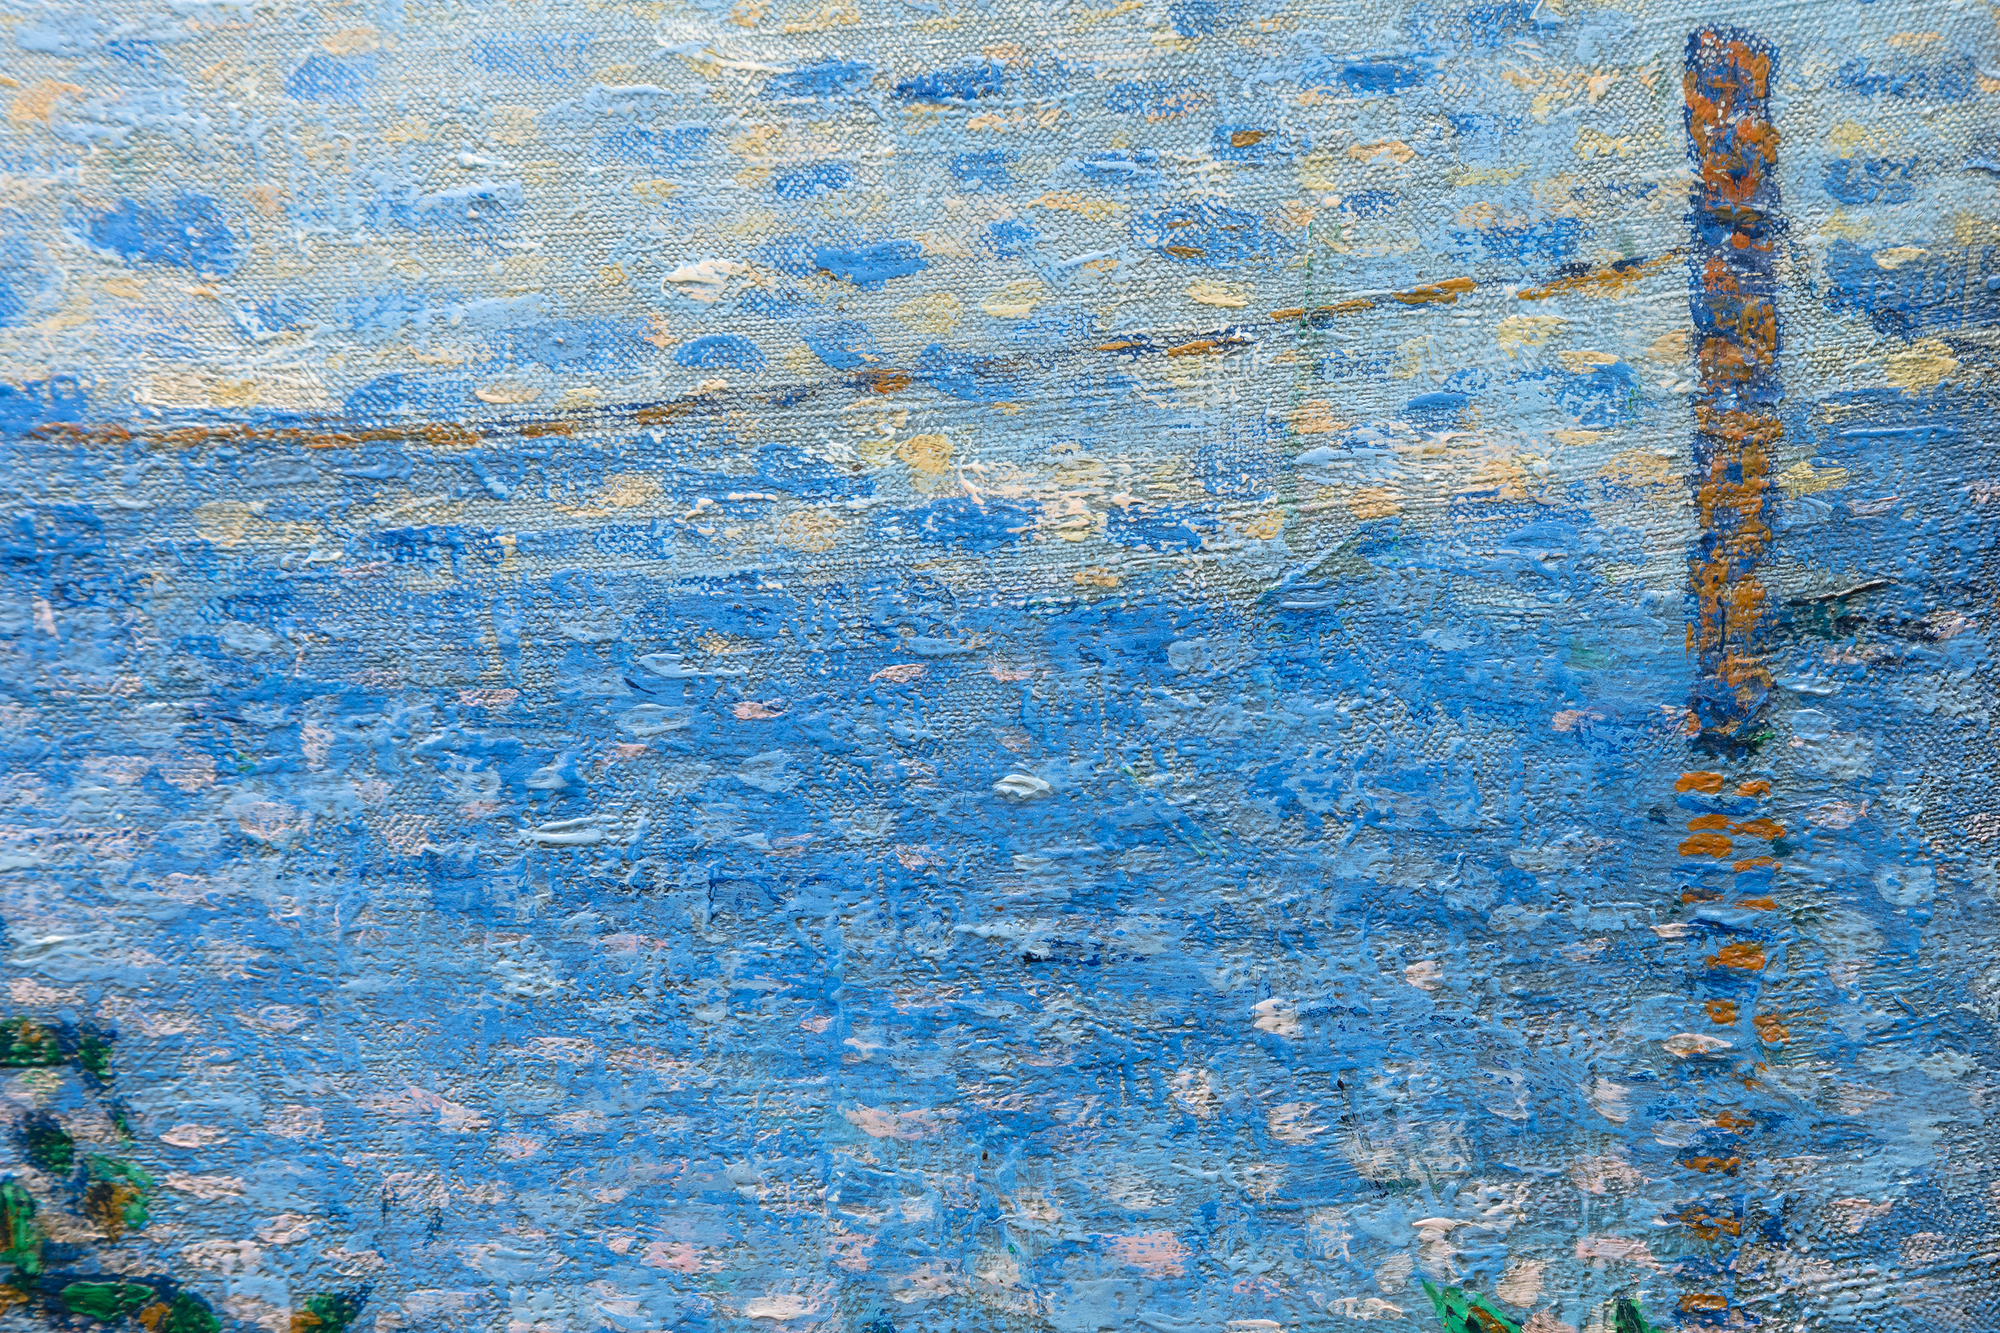 Am 15. Mai 1886 wurde ein visuelles Manifest für eine neue Kunstbewegung geboren, als Georges Seurats krönendes Werk, Ein Sonntagnachmittag auf der Insel La Grande Jatte, auf der Achten Impressionisten-Ausstellung enthüllt wurde. Seurat kann für sich in Anspruch nehmen, der ursprüngliche "wissenschaftliche Impressionist" zu sein, der in einer Weise arbeitete, die später als Pointillismus oder Divisionismus bekannt wurde. Es war jedoch sein Freund und Vertrauter, der 24-jährige Paul Signac, und ihr ständiger Dialog, der zu einer Zusammenarbeit führte, um die Physik des Lichts und der Farbe zu verstehen und den daraus entstandenen Stil zu entwickeln. Signac war ein ungeschulter, aber äußerst talentierter impressionistischer Maler, dessen Temperament perfekt zu der Strenge und Disziplin passte, die für die mühsame Pinselführung und Farbgebung erforderlich waren. Signac eignete sich die Technik schnell an. Er war auch Zeuge von Seurats mühsamer zweijähriger Reise, auf der er unzählige Schichten unvermischter Farbpunkte auf dem kolossal großen La Grande Jatte aufbaute. Gemeinsam waren Signac, der forsche, extrovertierte Künstler, und Seurat, der verschlossene, introvertierte Künstler, im Begriff, den Impressionismus zu untergraben und den Lauf der modernen Kunst zu verändern.